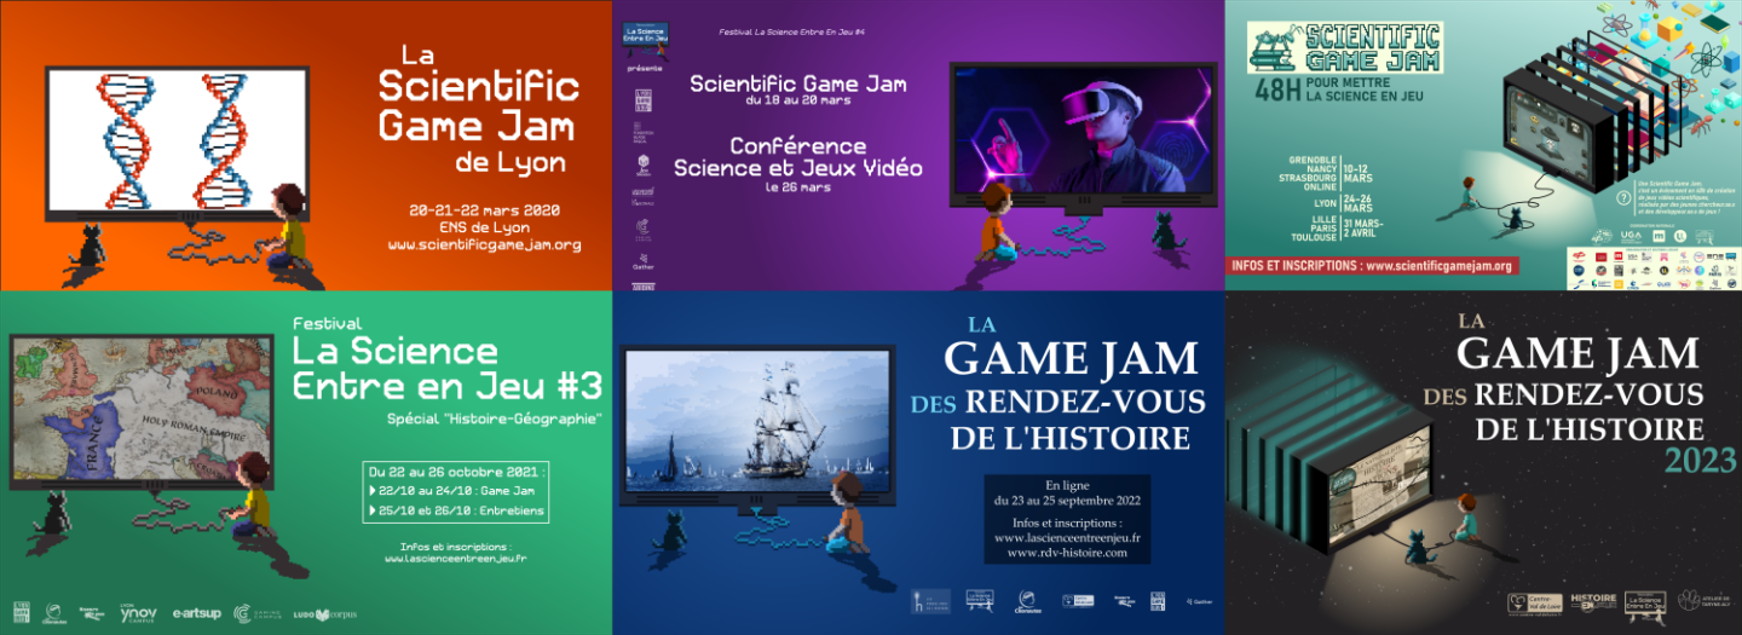 Scientific Game Jam - Précédentes éditions